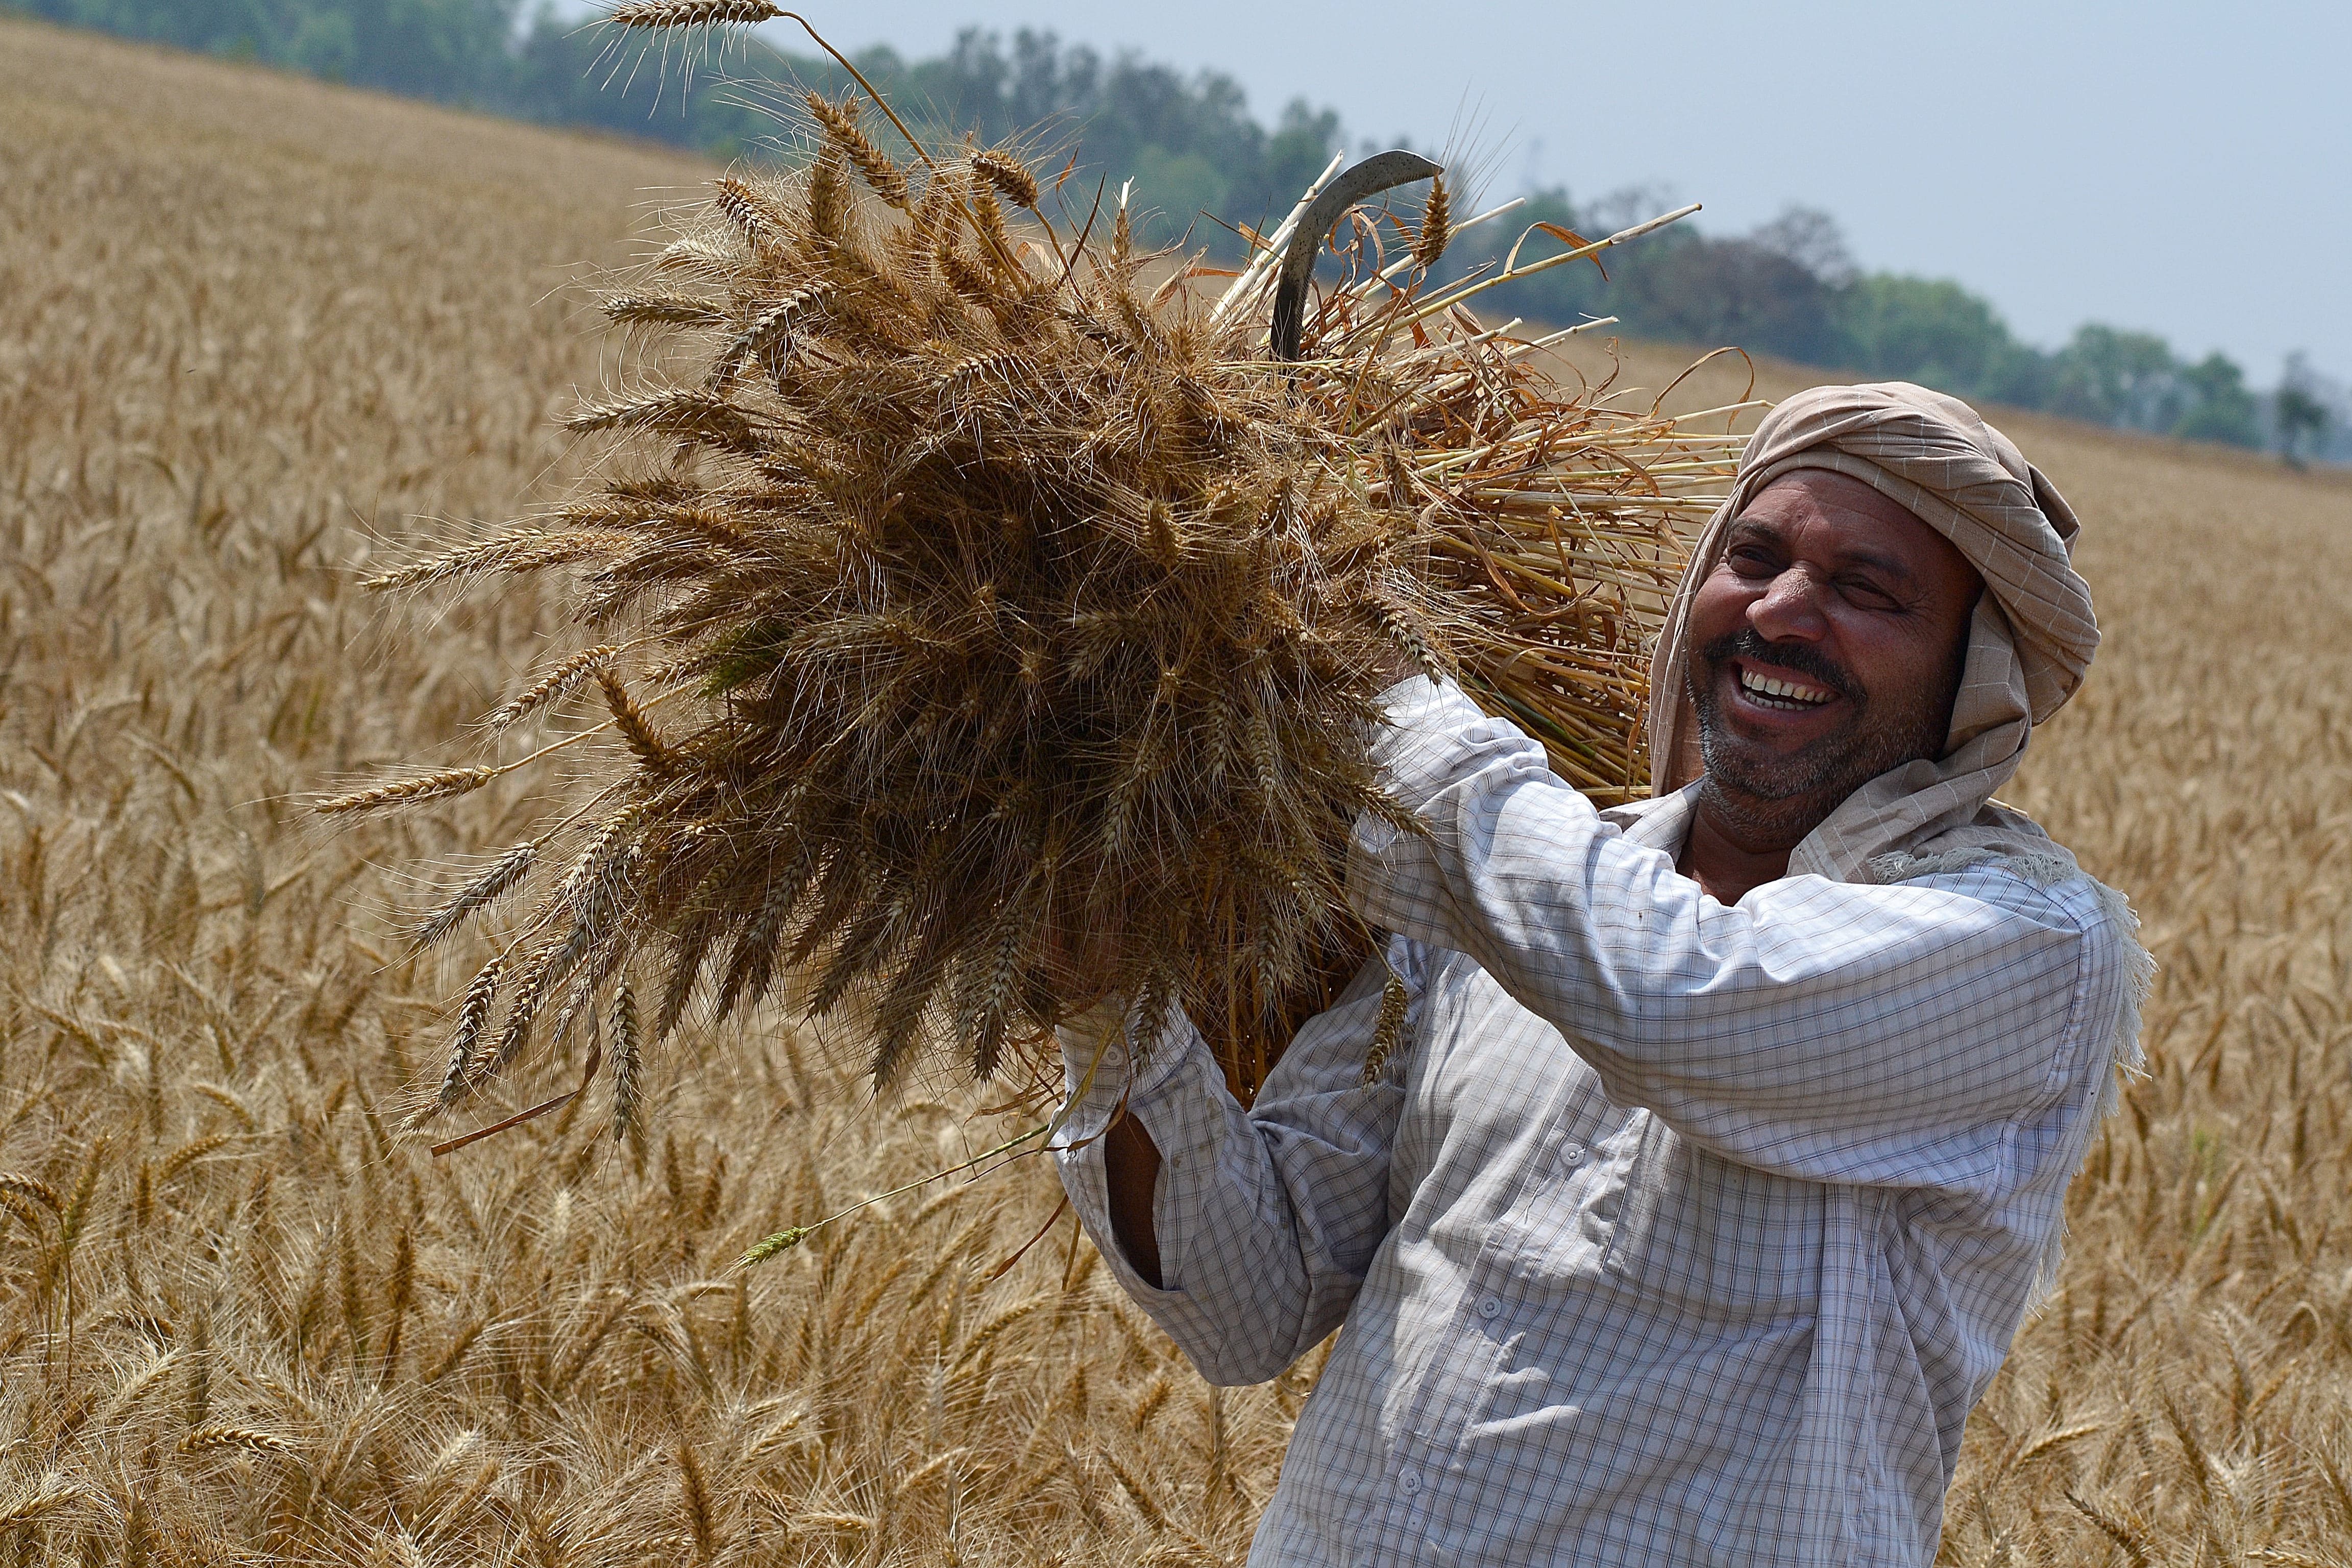 In northern india they harvest their wheat. Урожай пшеницы. Фермер пшеница. Индия пшеница. Уборка пшеницы в Индии.